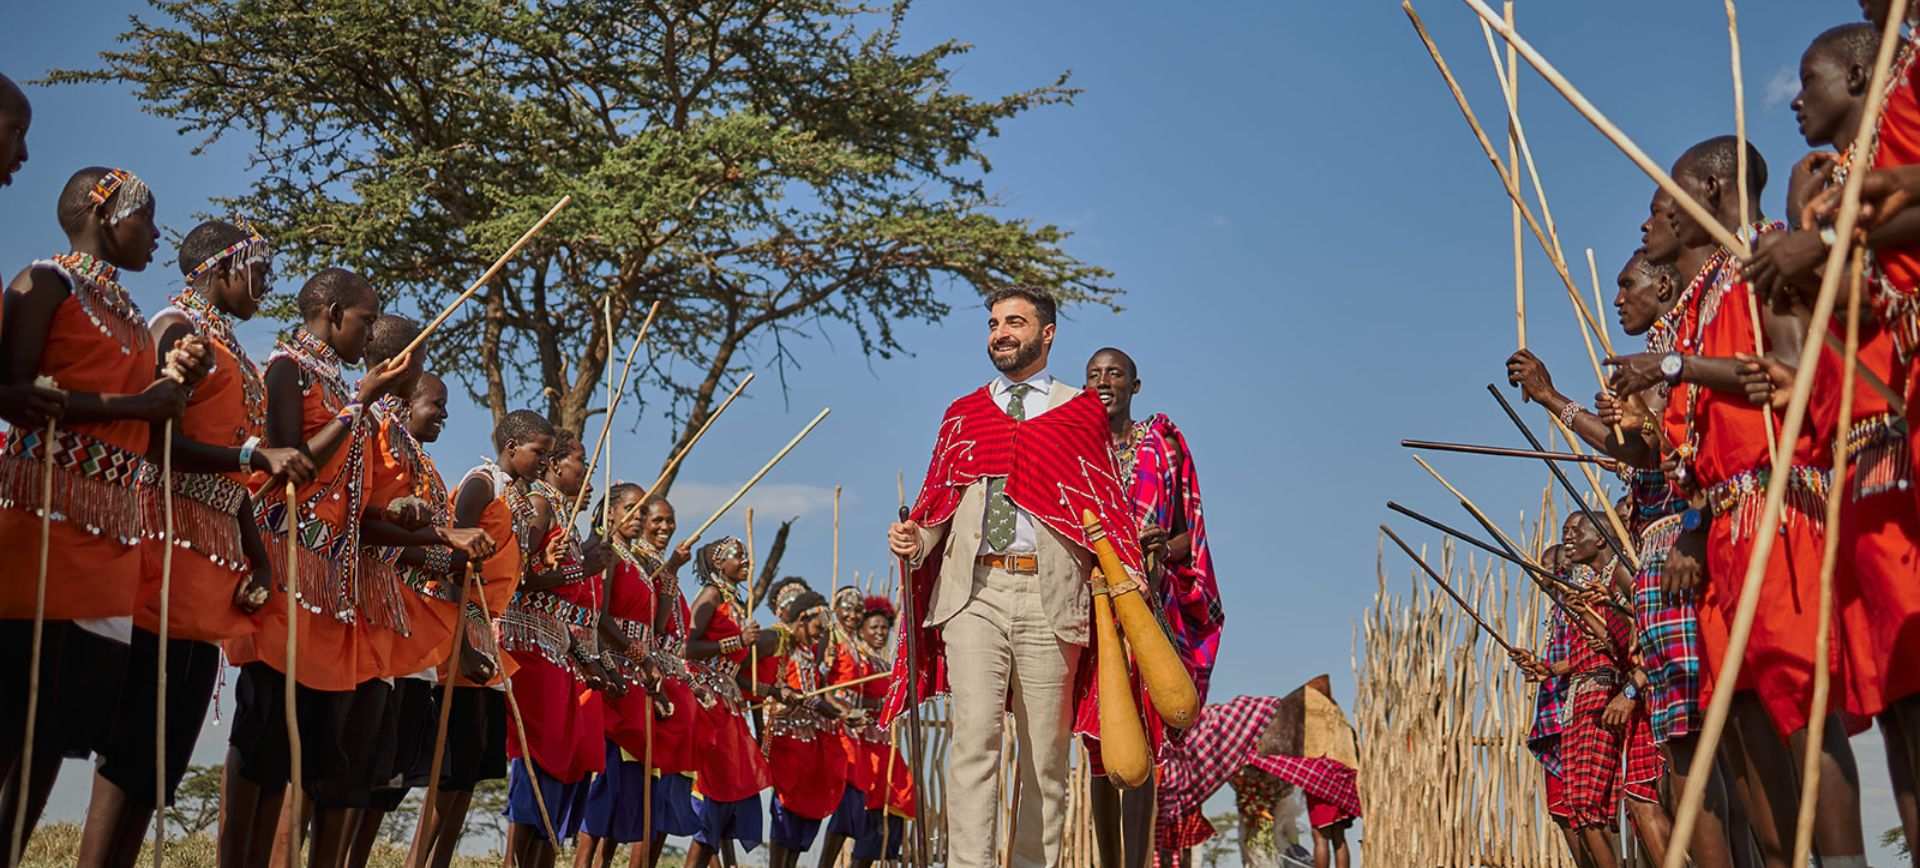 Wedding Ceremonies with Maasai People in Kenya